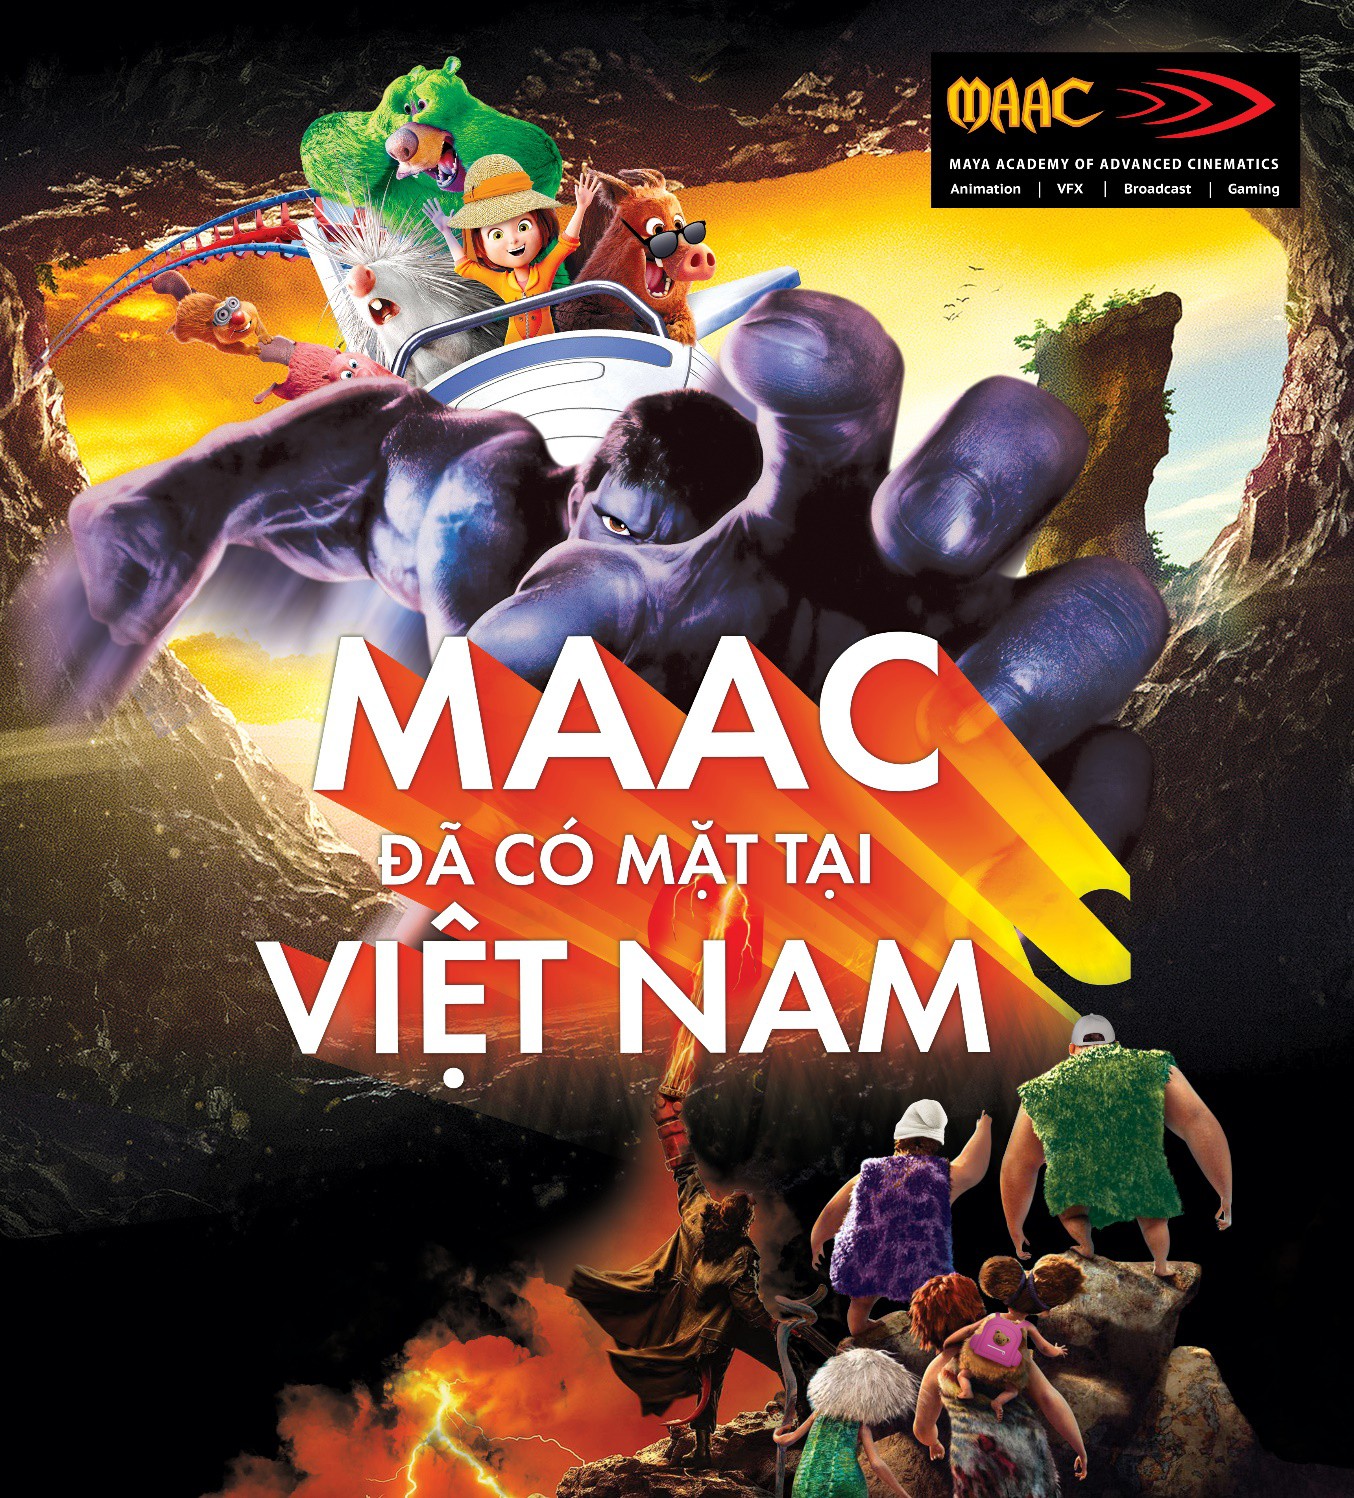 Học viện MAAC sắp ra mắt tại Việt Nam – Lựa chọn mới cho các bạn trẻ đam mê  VFX và 3D Animation